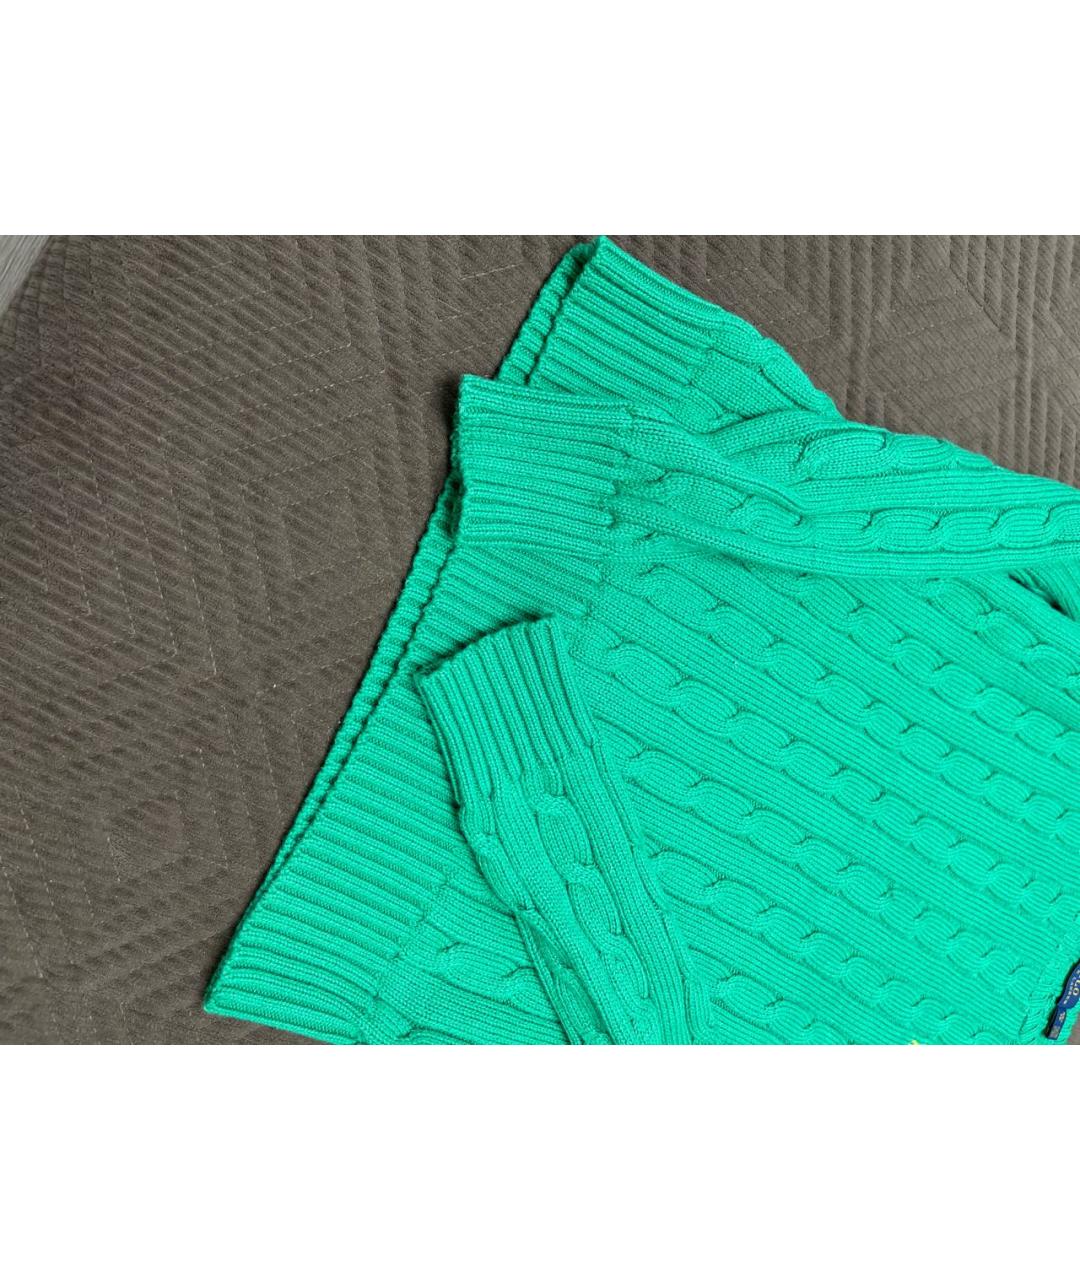 POLO RALPH LAUREN Зеленый хлопковый джемпер / свитер, фото 3